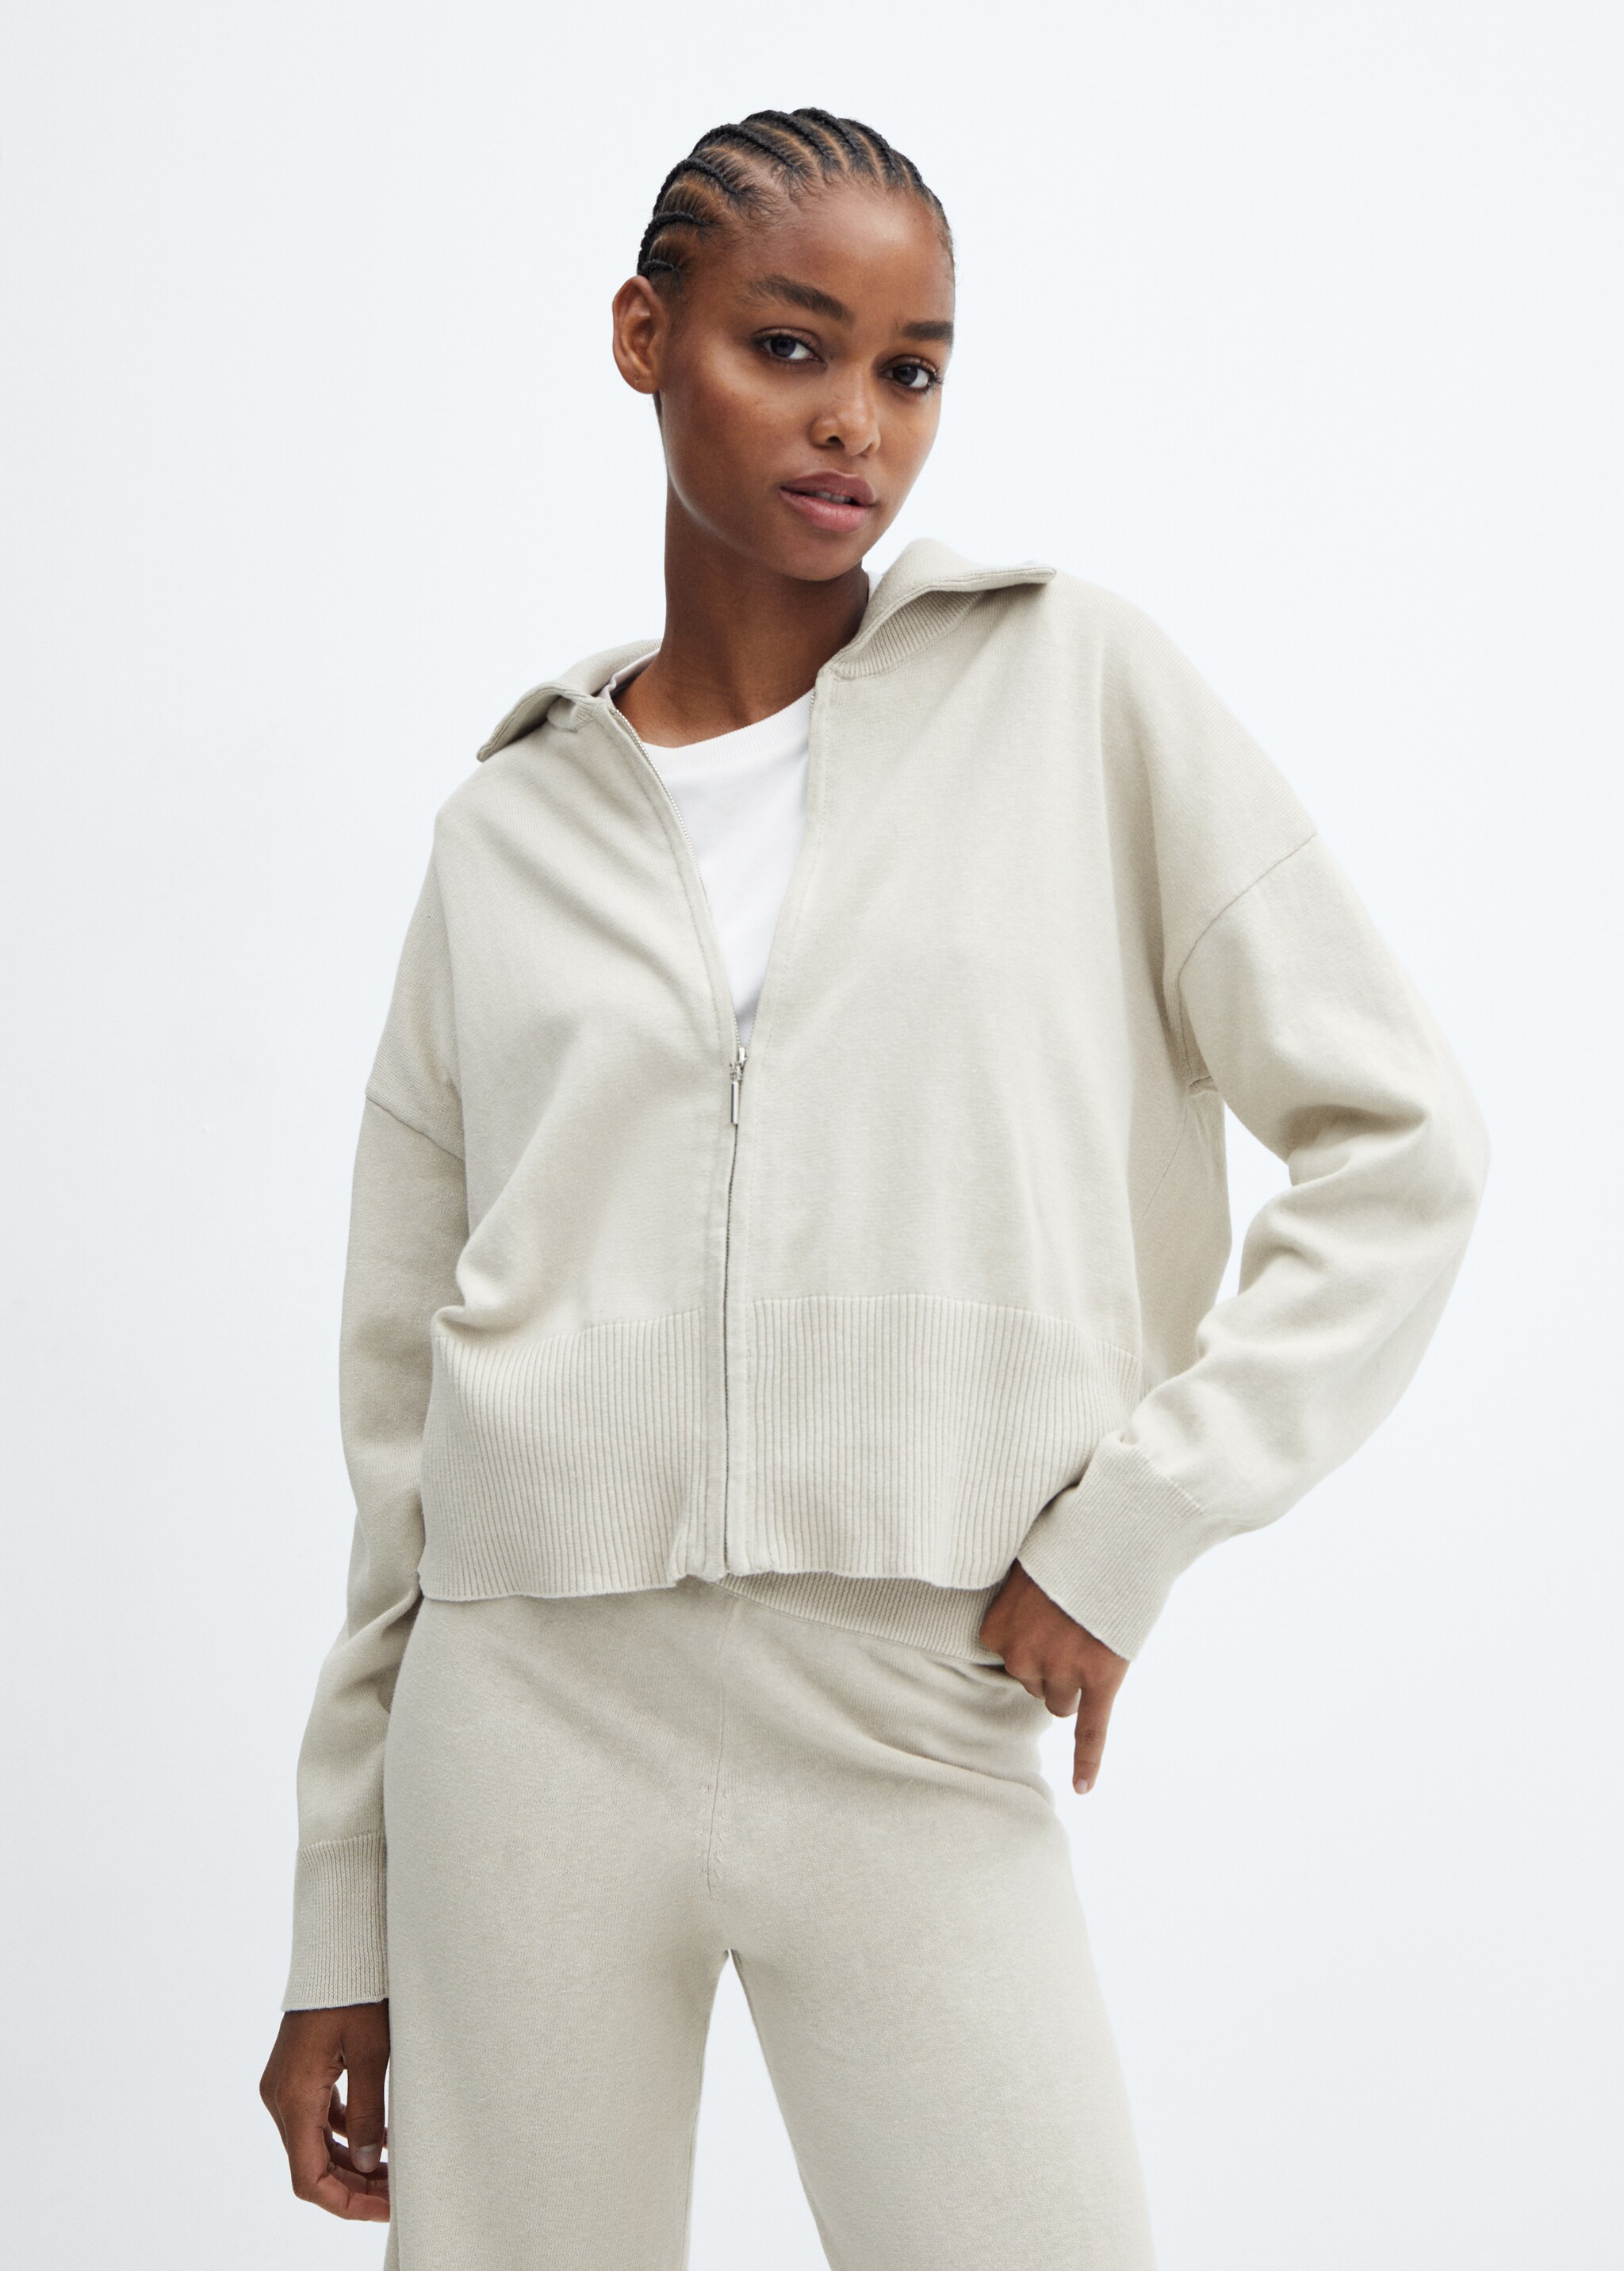 Cotton and linen pyjama jacket with zip - Plan mediu